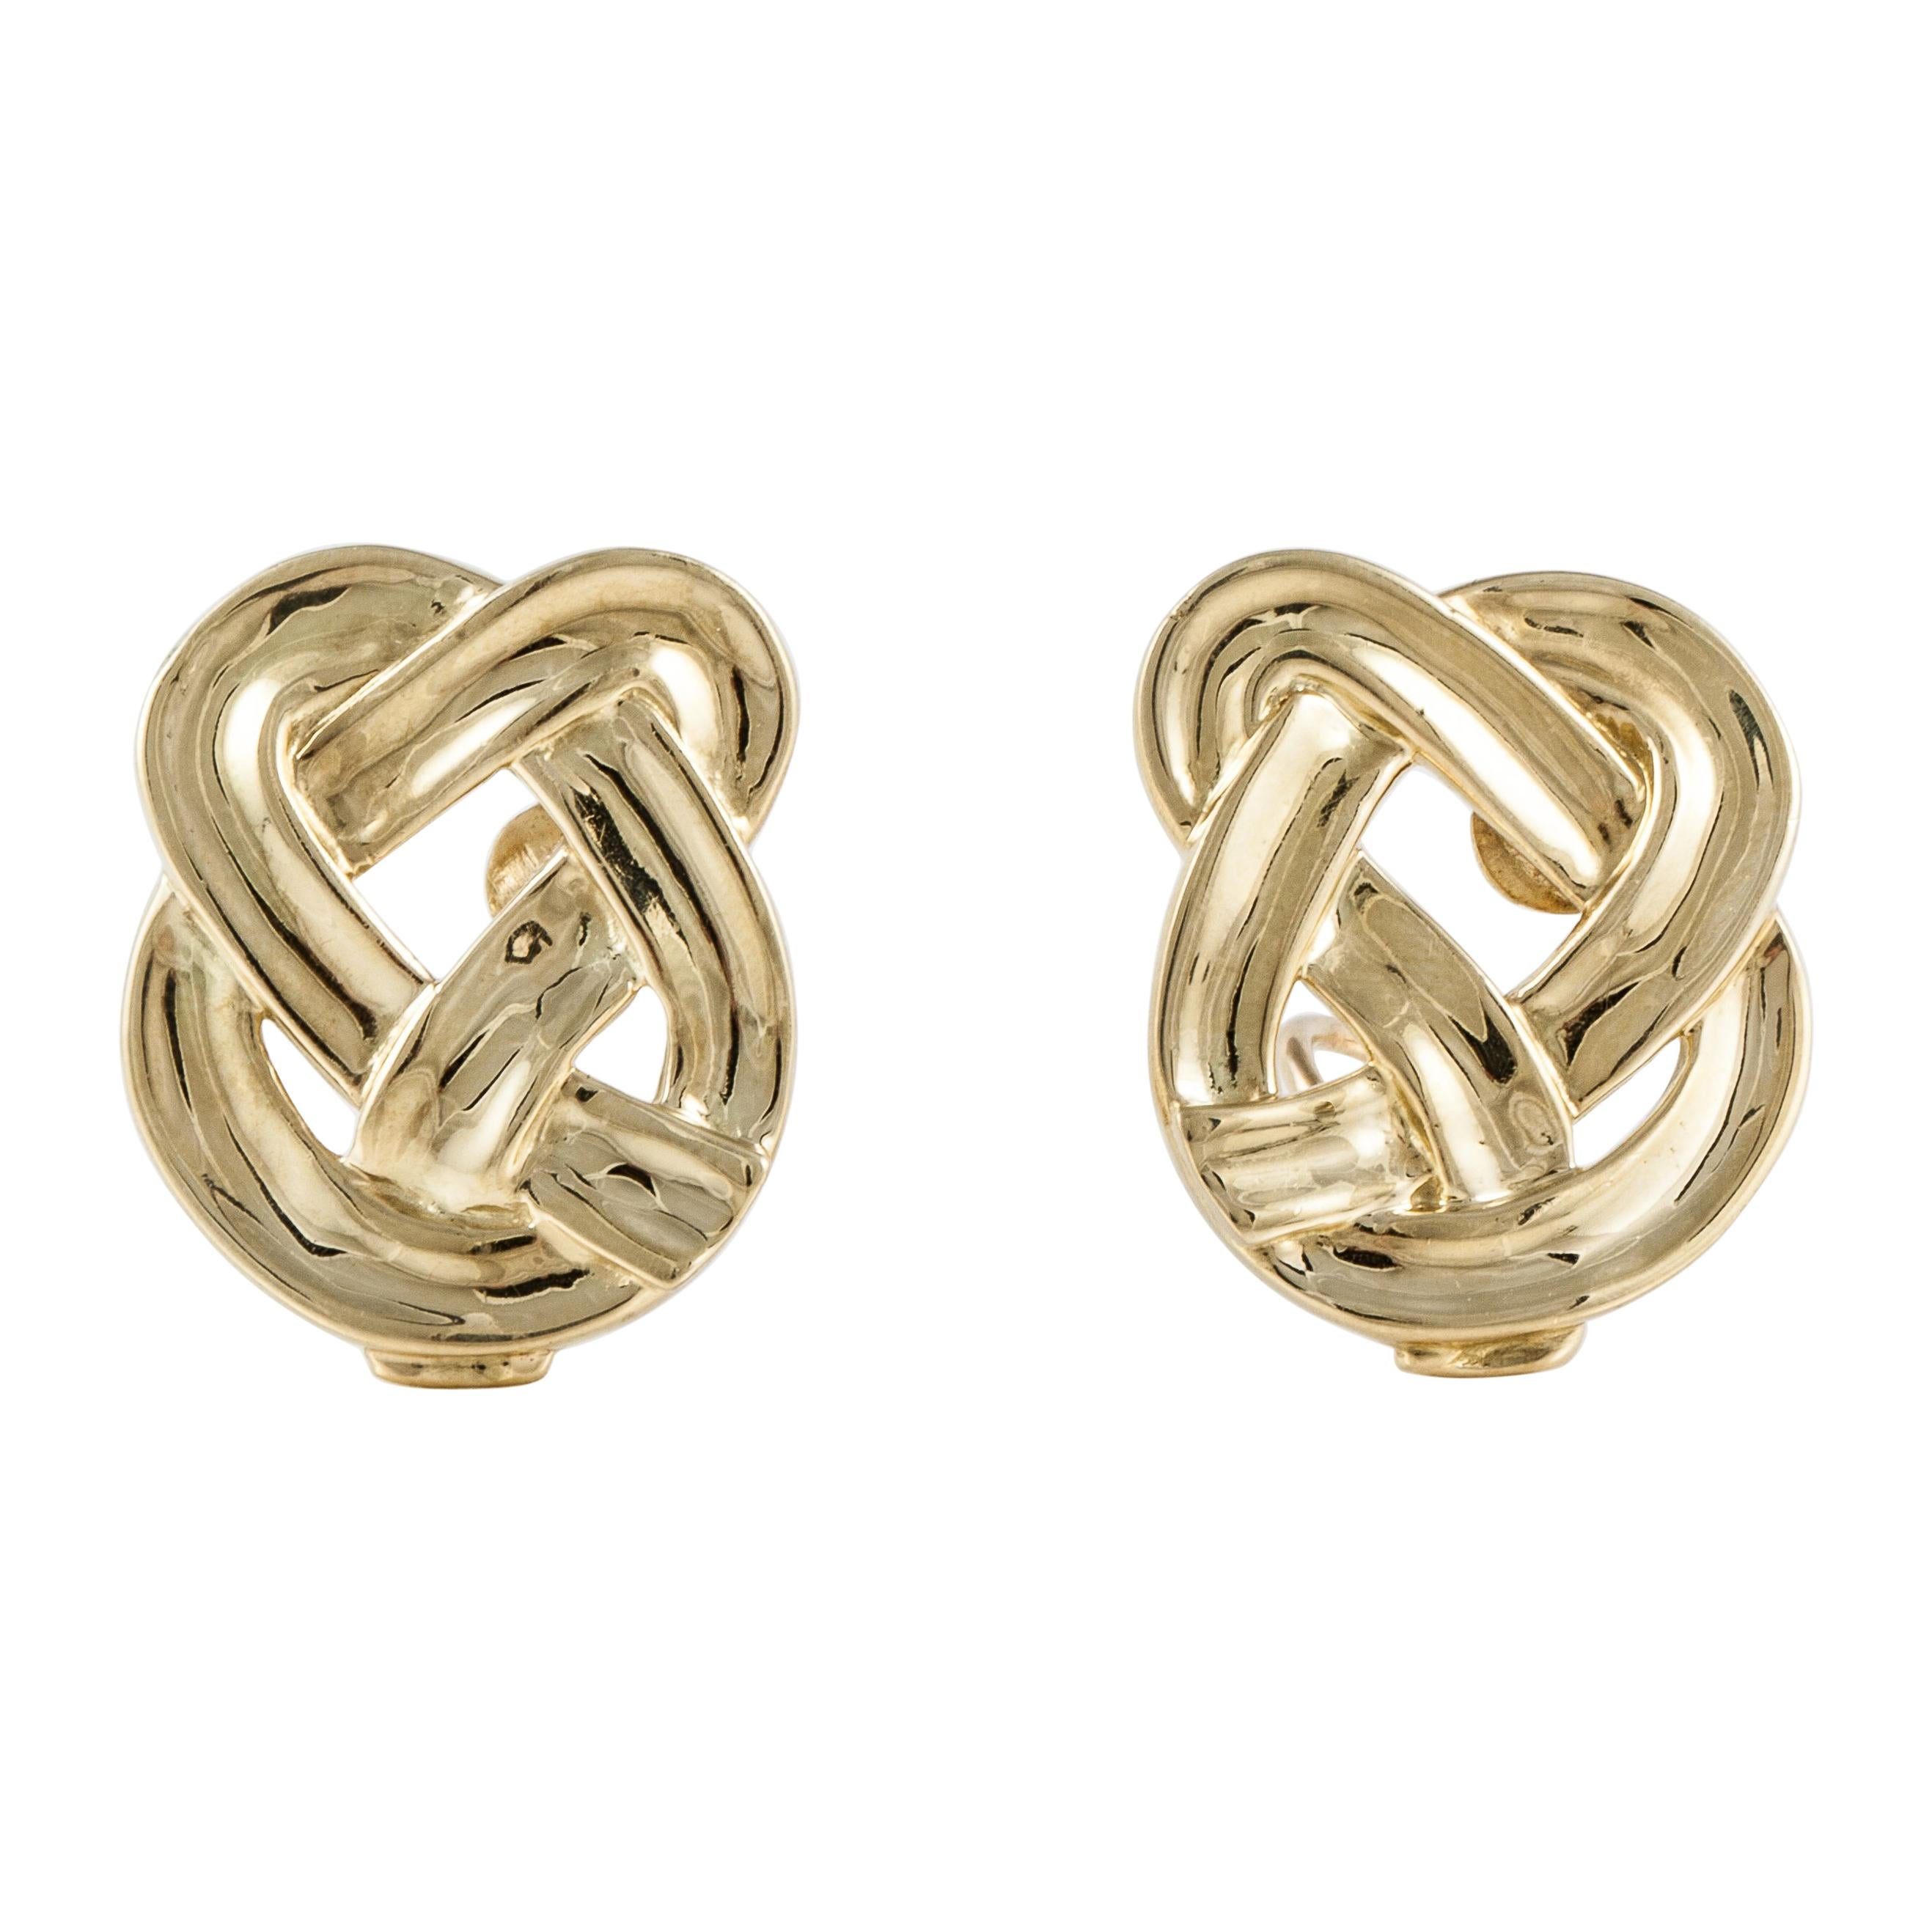 Angela Cummings for Tiffany & Co. 18K Gold Earrings